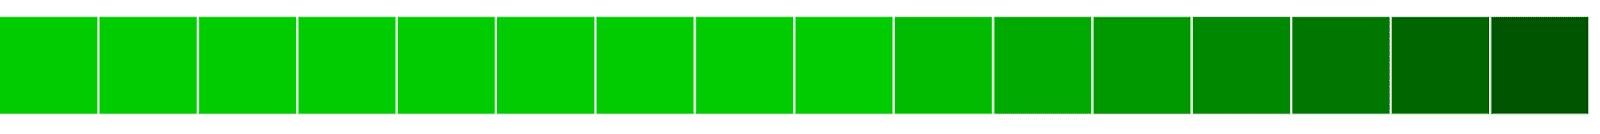 การจัดแนวบล็อกสีเขียวในแนวนอนจากสีอ่อนไปเข้ม